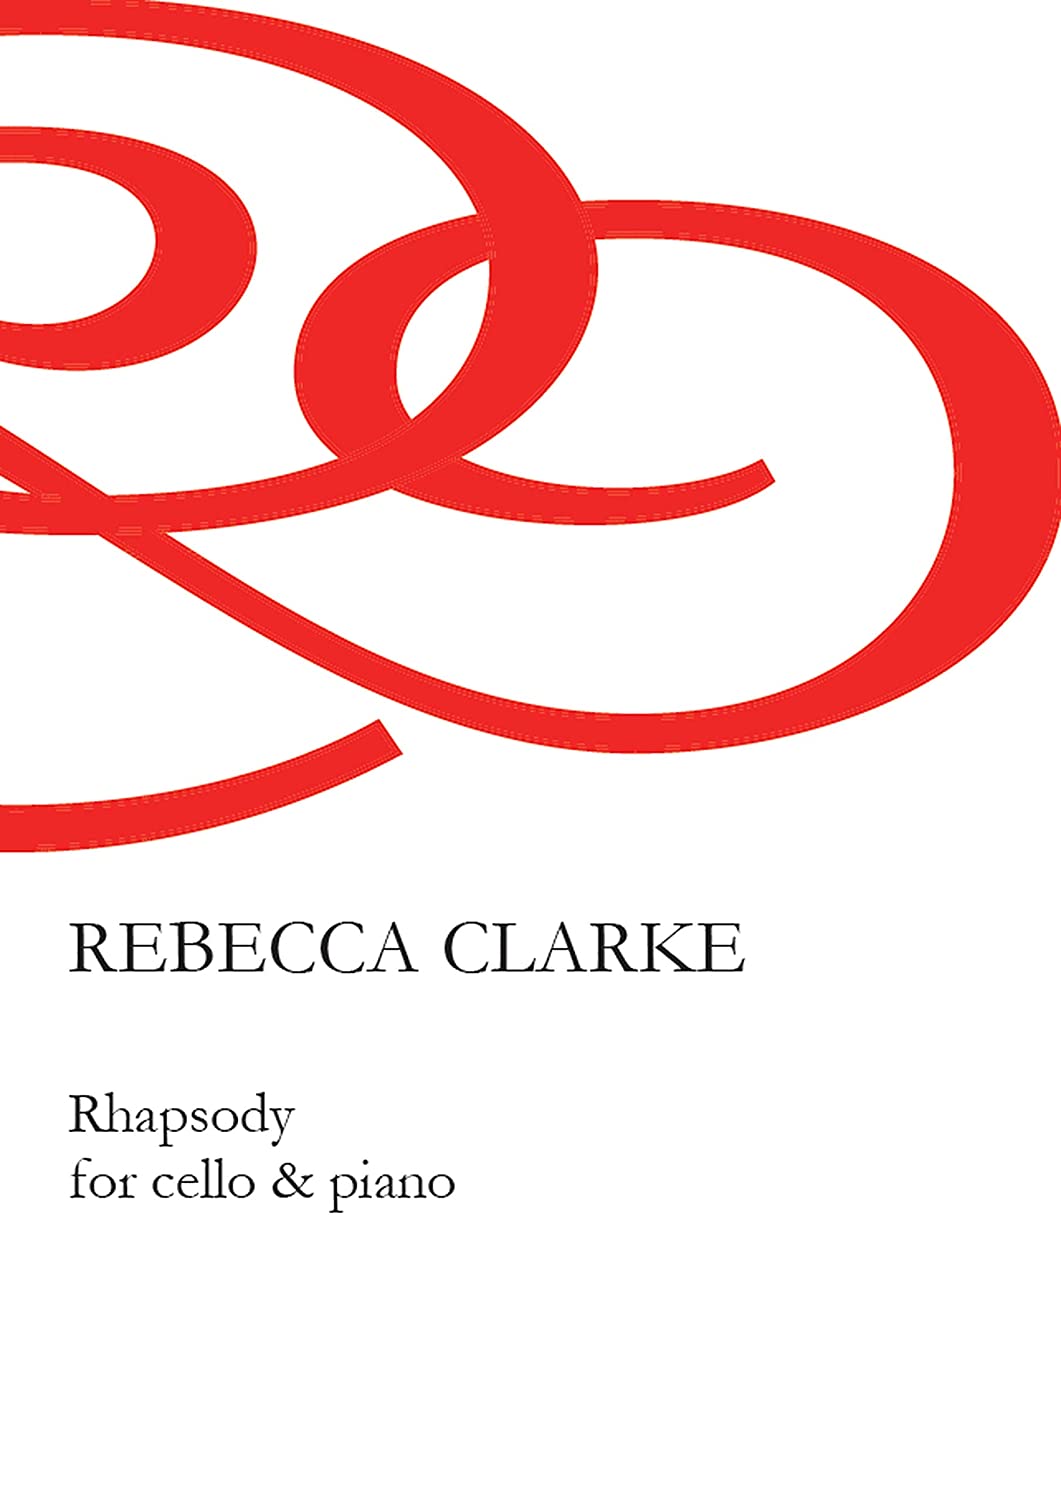 Libri Rebecca Clarke - Rhapsody For Cello & Piano NUOVO SIGILLATO, EDIZIONE DEL 01/05/2020 SUBITO DISPONIBILE